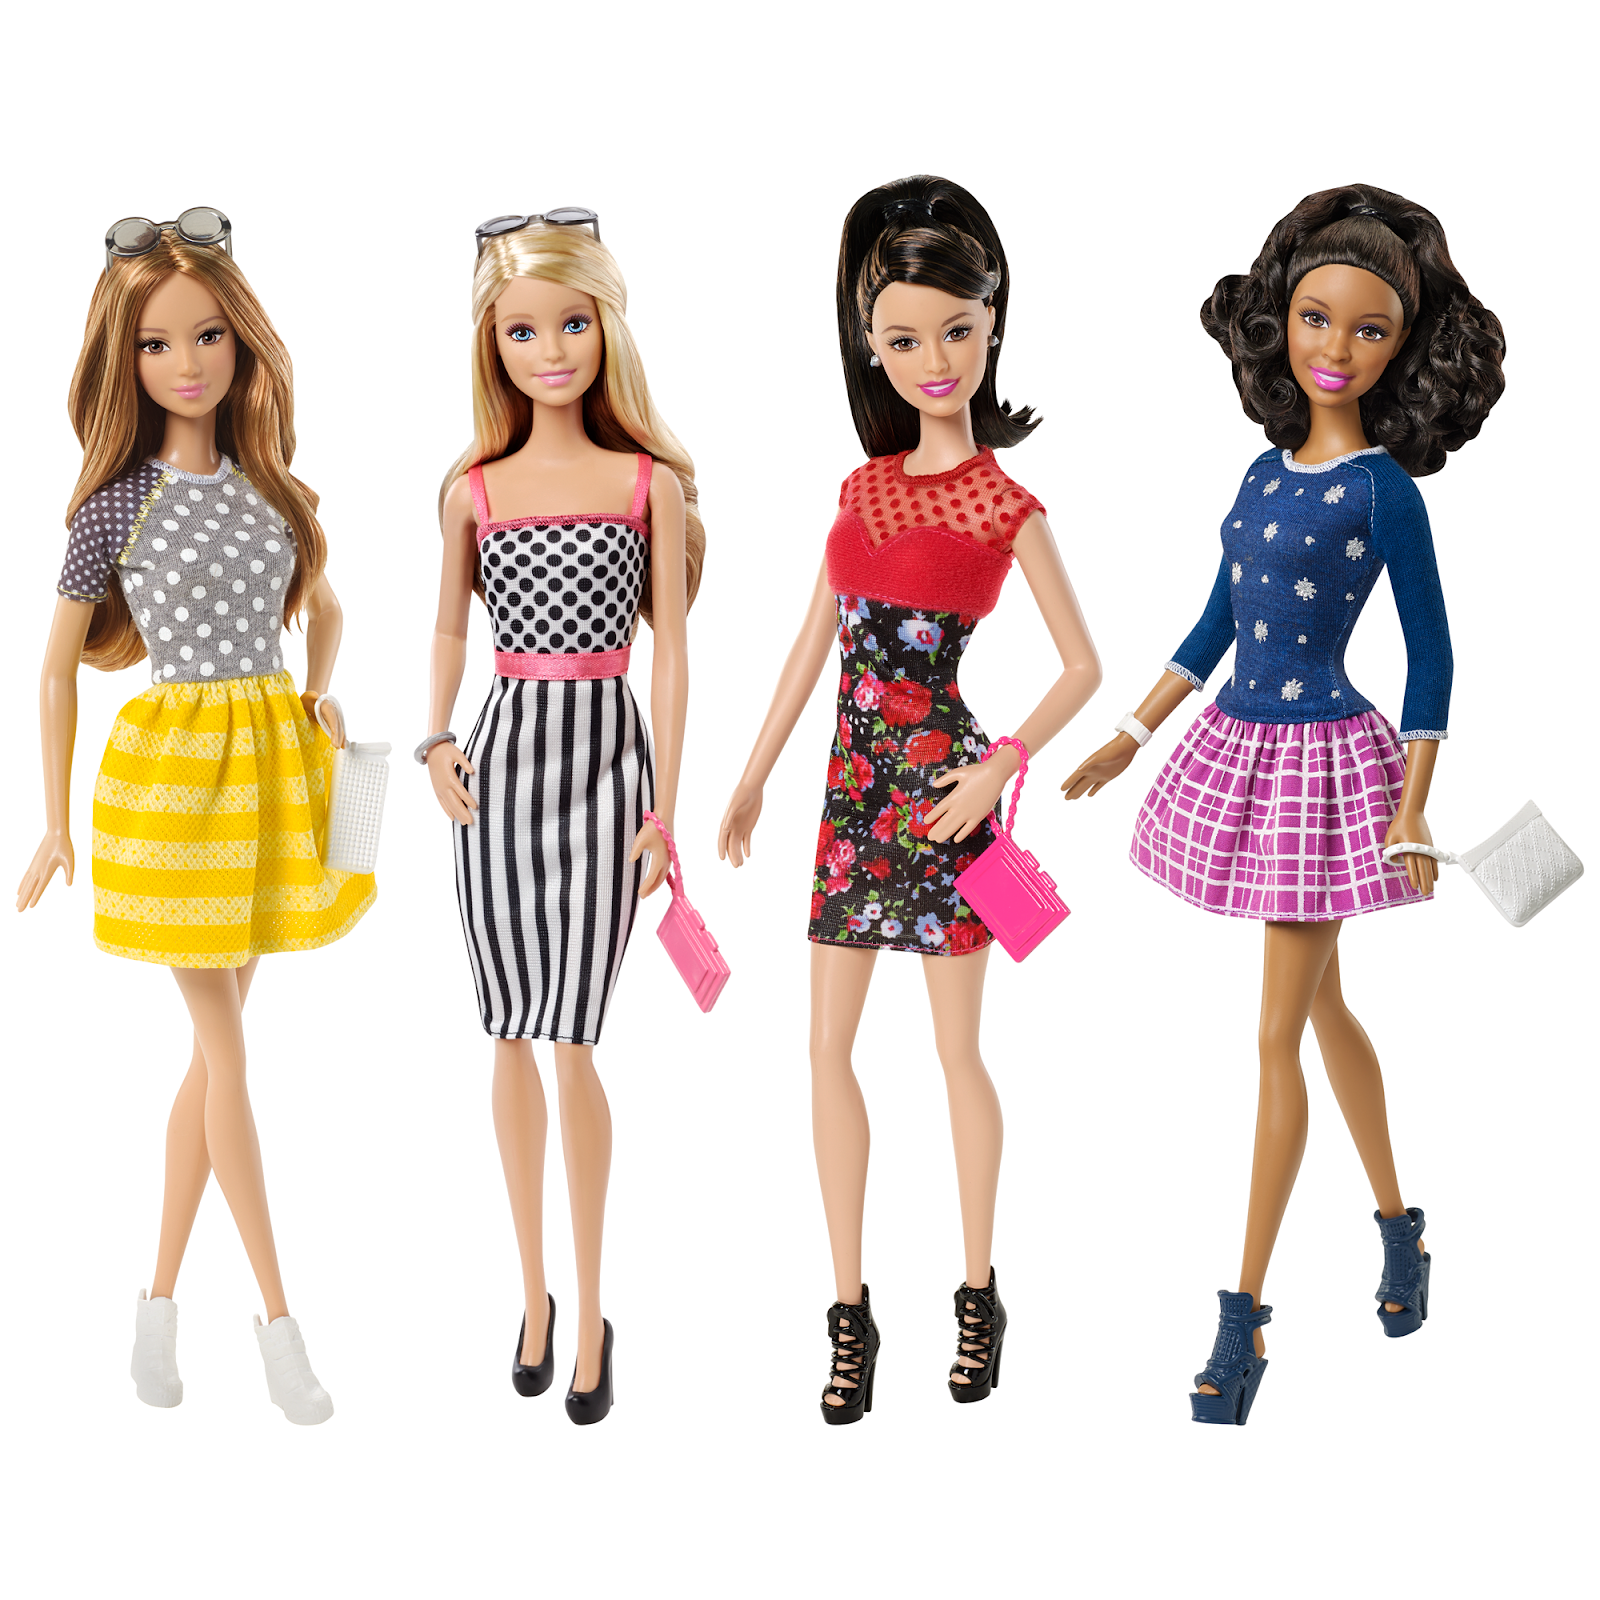 Барби фашионистас 2015. Коллекция Барби фашионистас. Куклы Барби фашионистас 2015. Барби фашионистас 3. Barbie collections